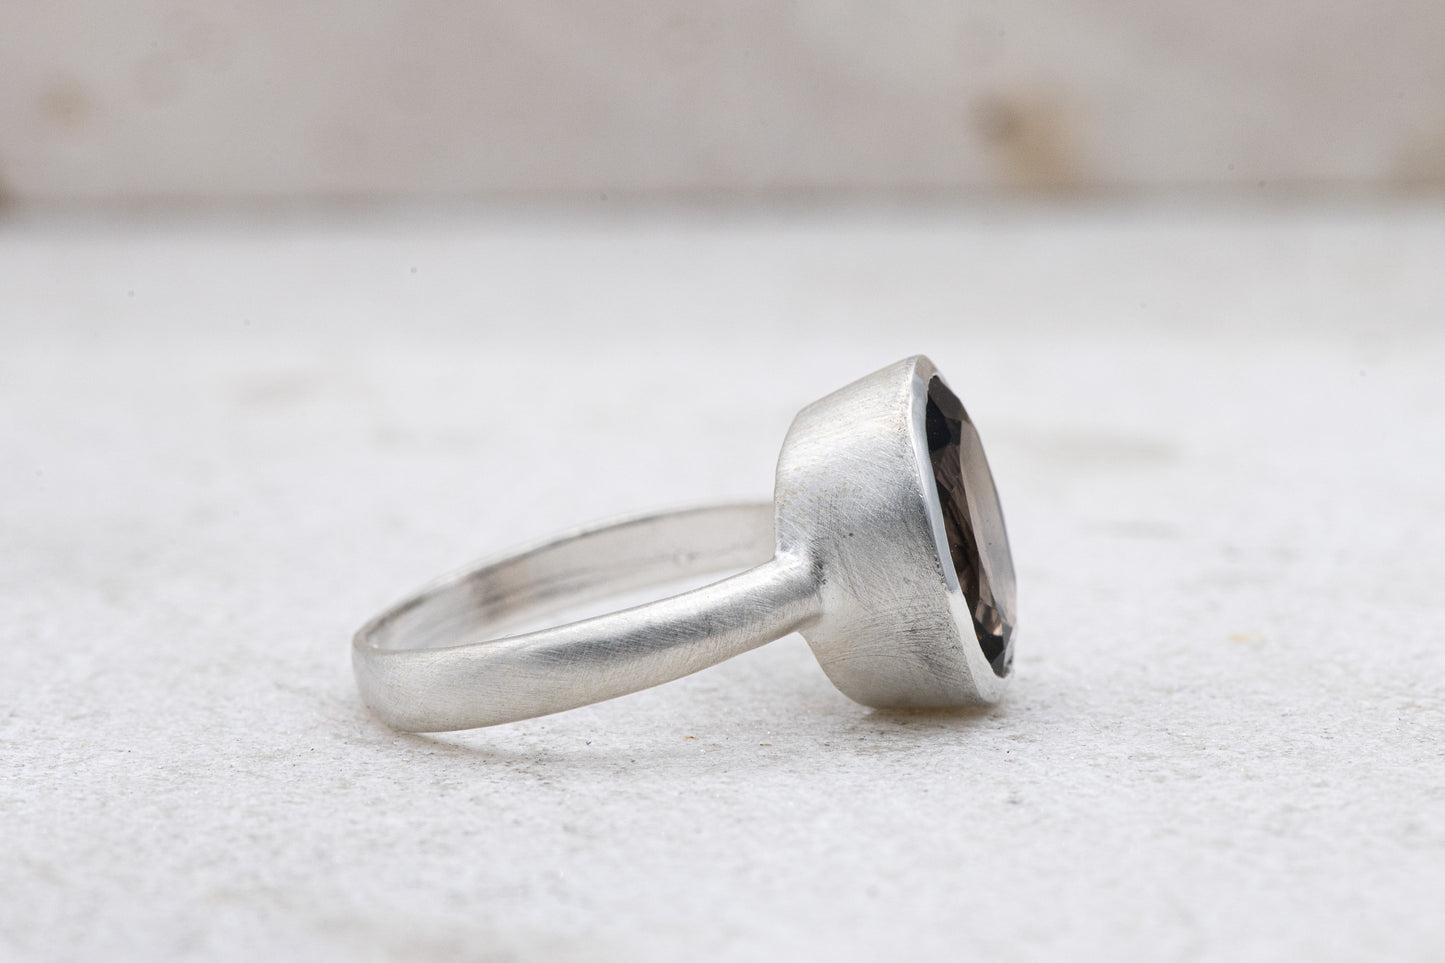 A Handmade Solitaire Smoky Quartz Ring with a smoky quartz stone.